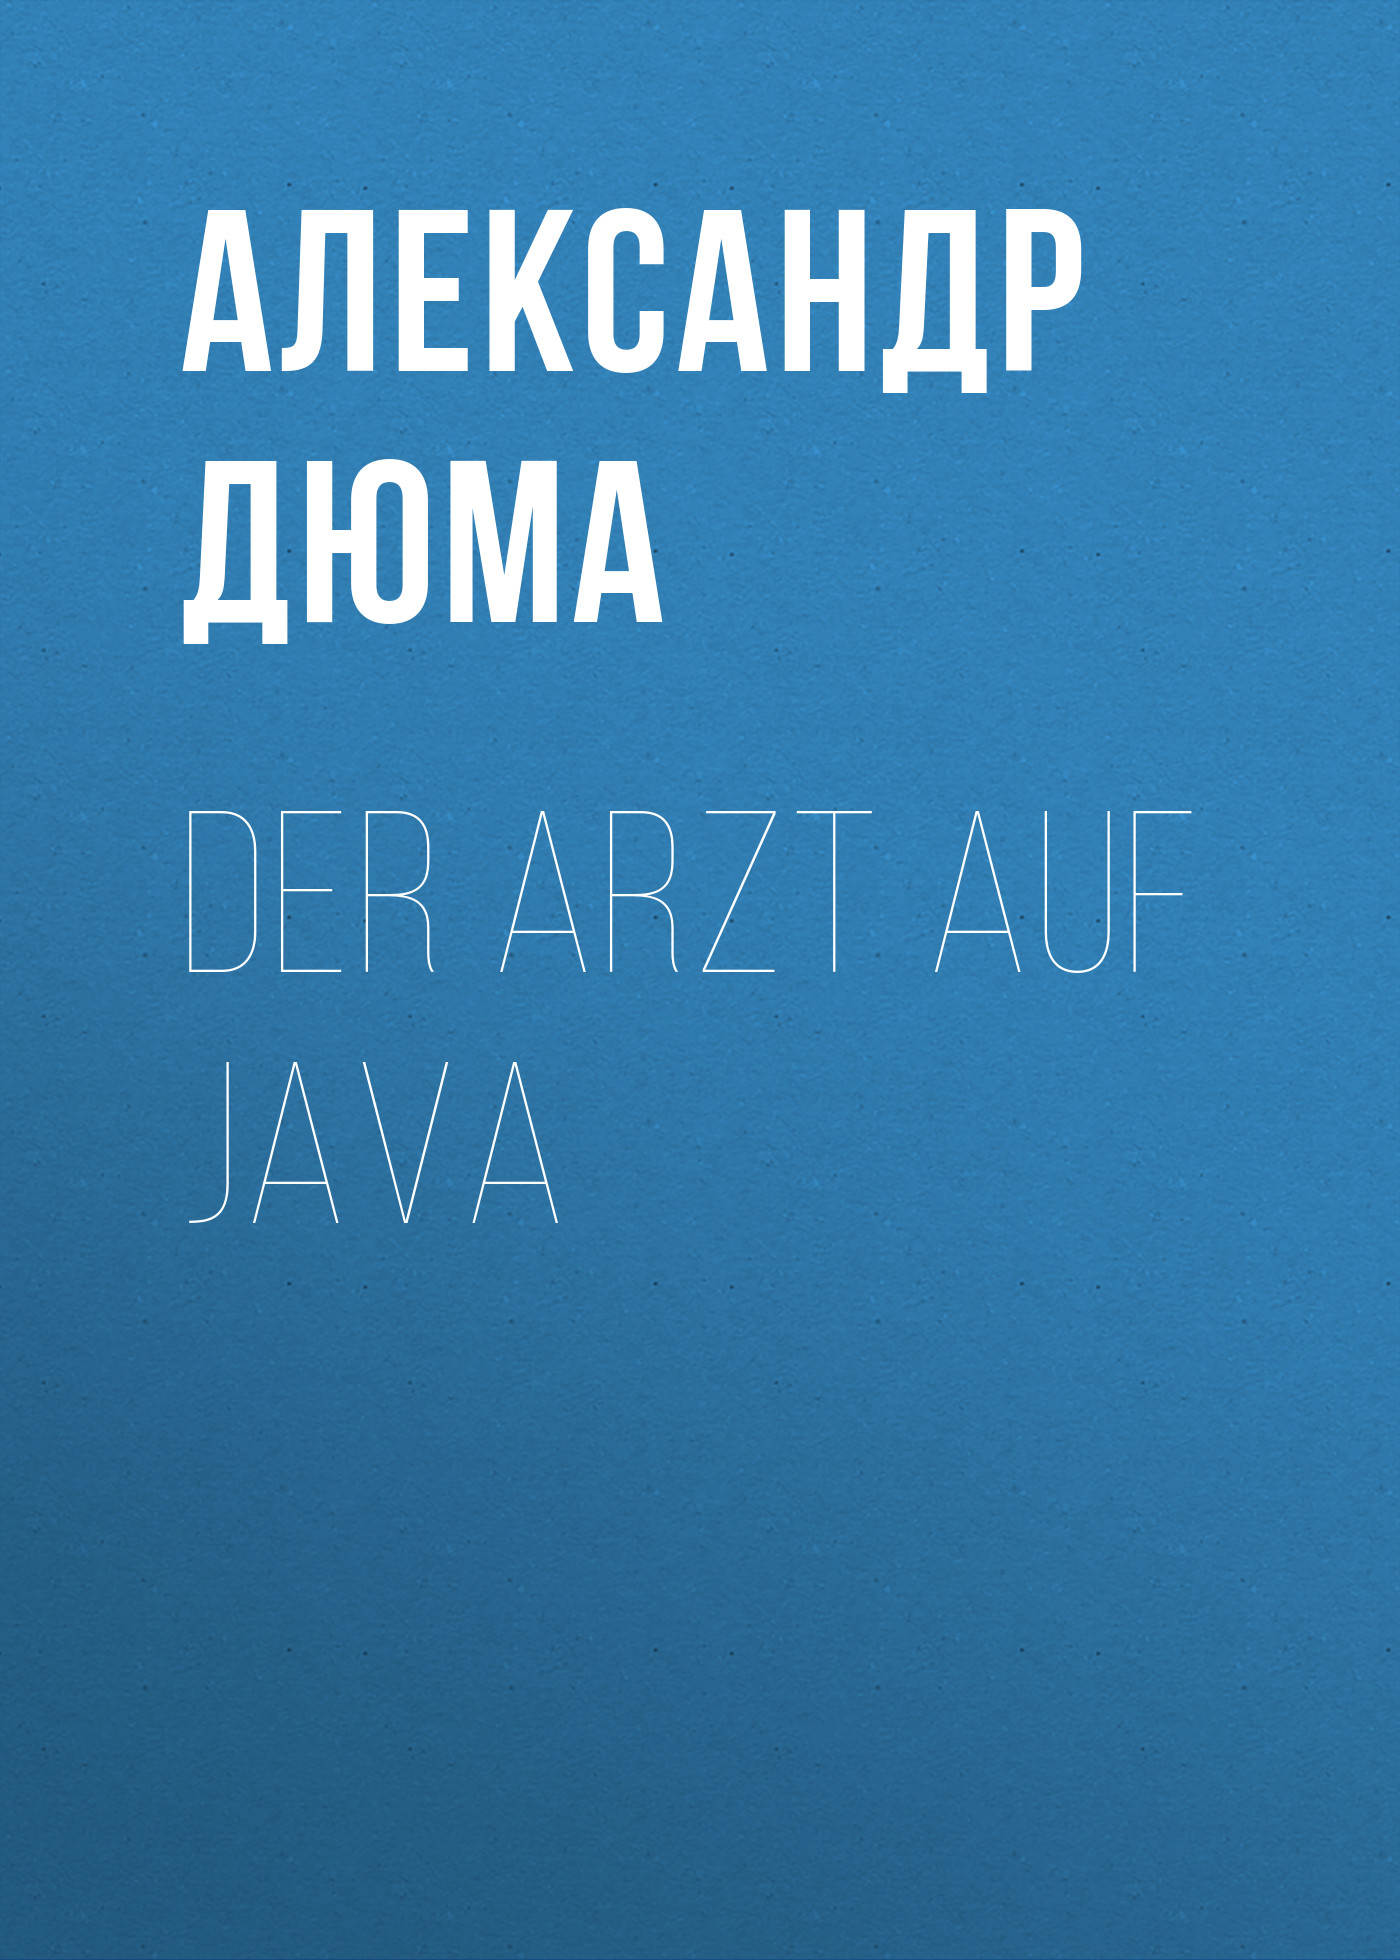 Книга Der Arzt auf Java из серии , созданная Alexandre Dumas der Ältere, может относится к жанру Зарубежная классика. Стоимость электронной книги Der Arzt auf Java с идентификатором 48632412 составляет 0 руб.